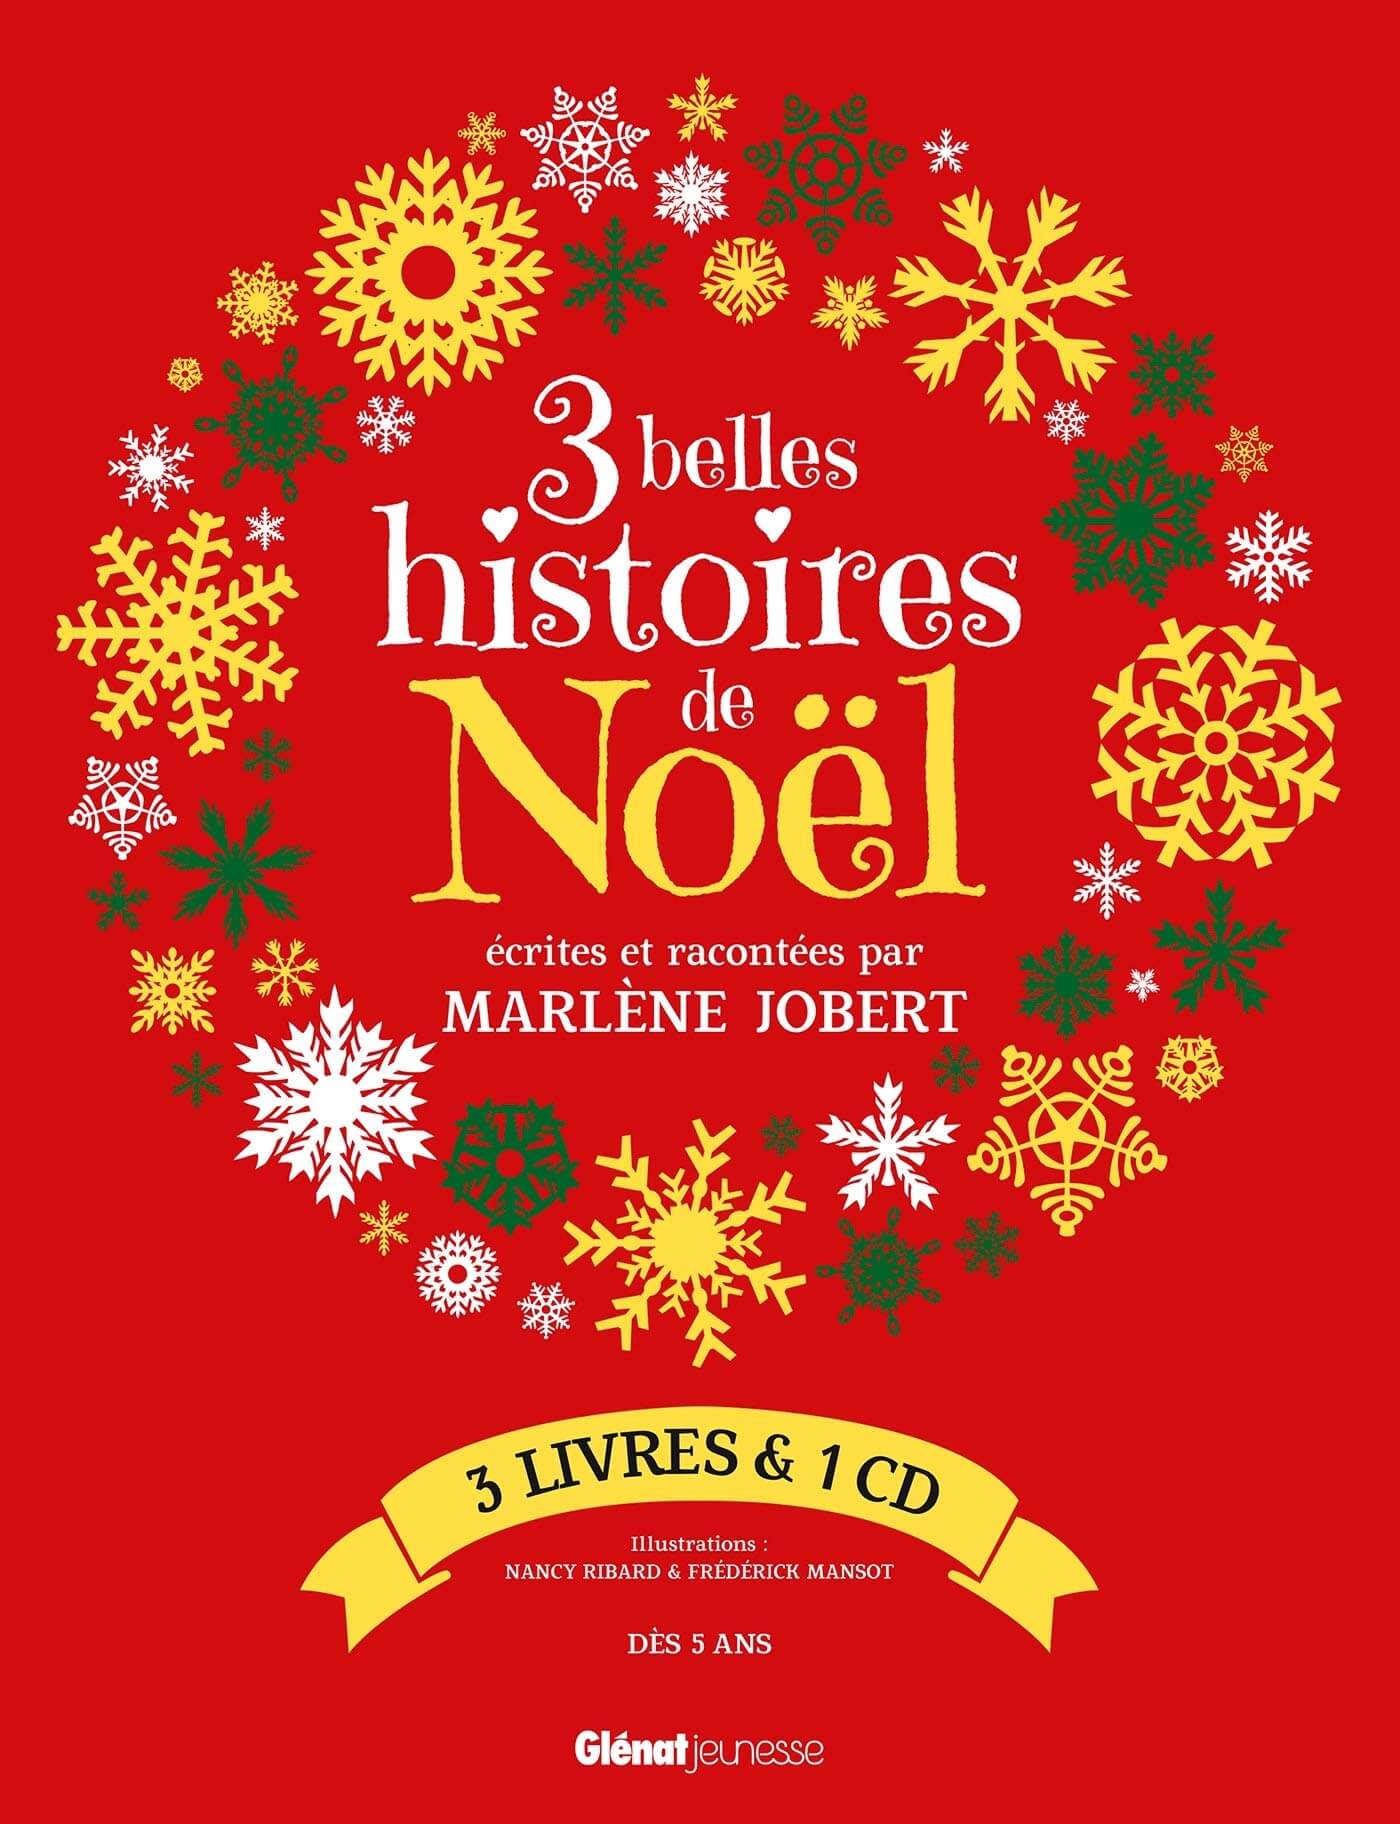 3 belles histoires de Noël : 3 livres & 1 CD